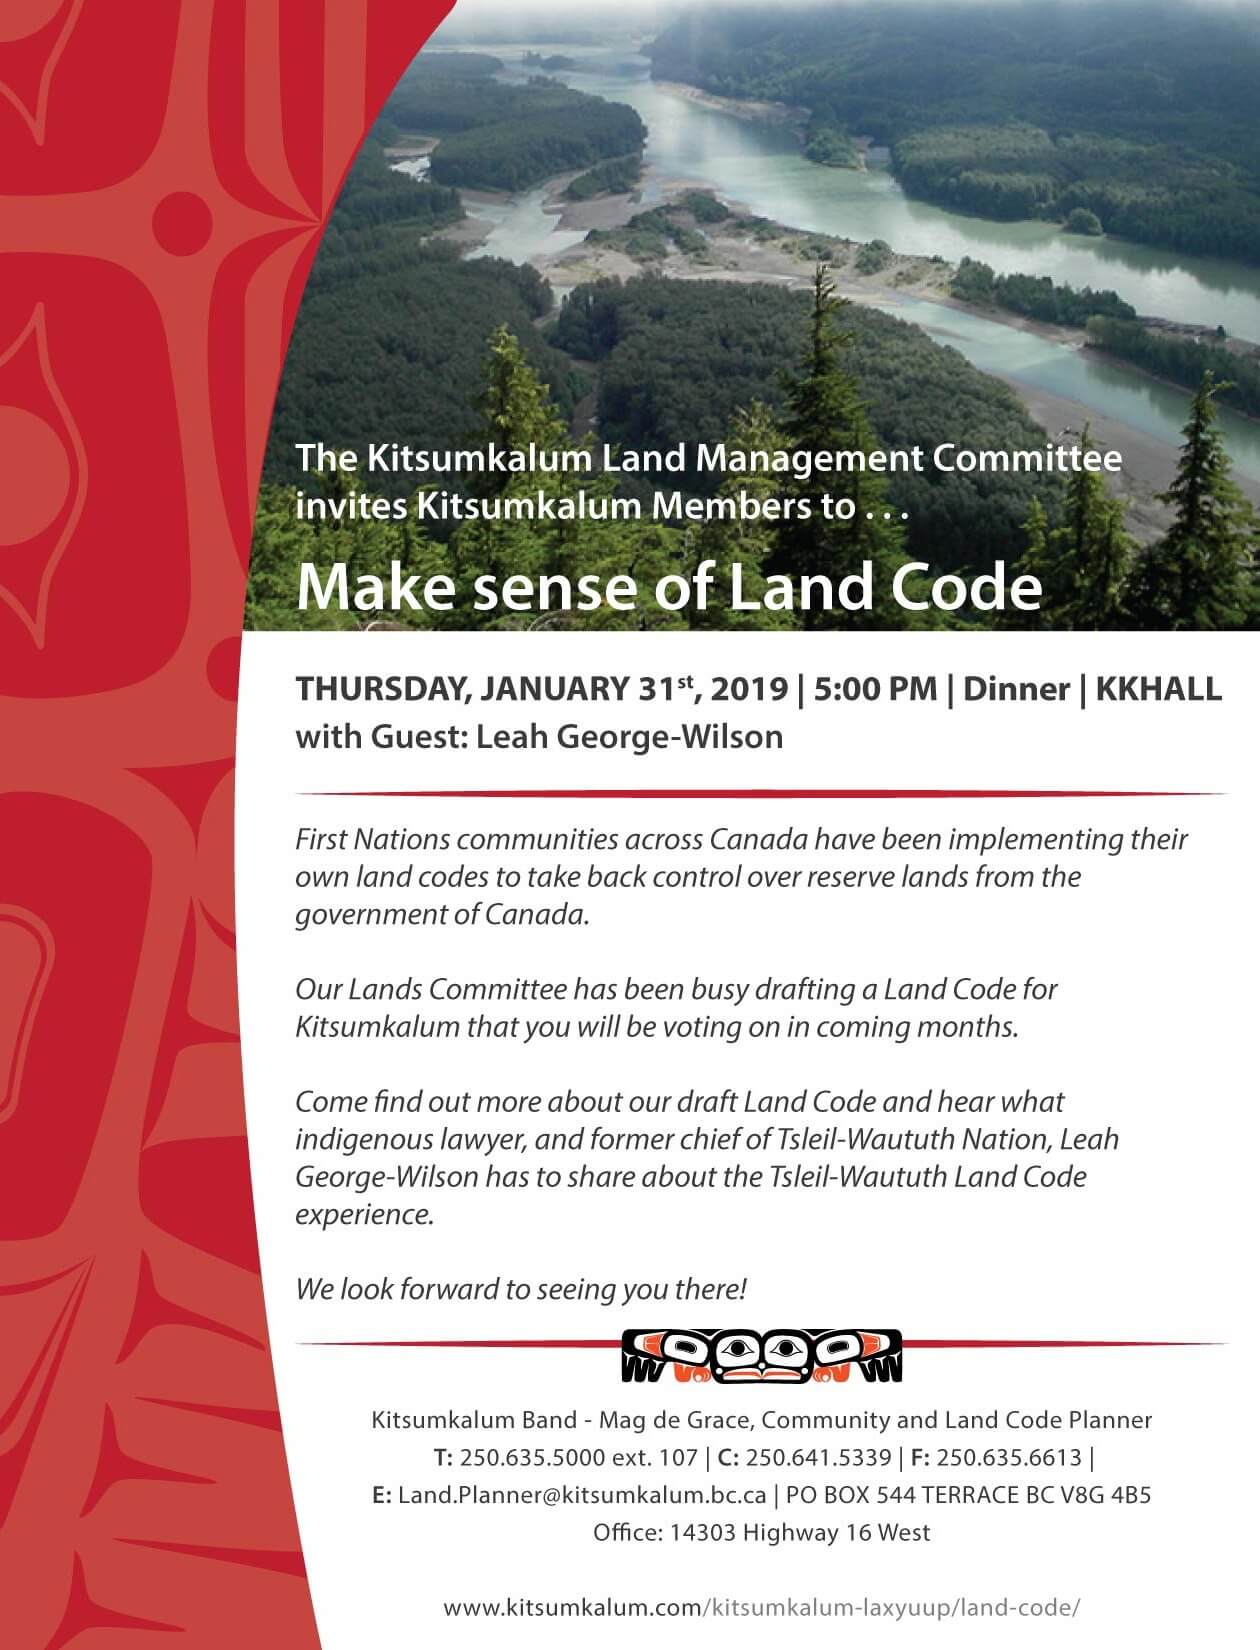 Make Sense Of Land Code Kitsumkalum Dinner And Meeting Jan 31